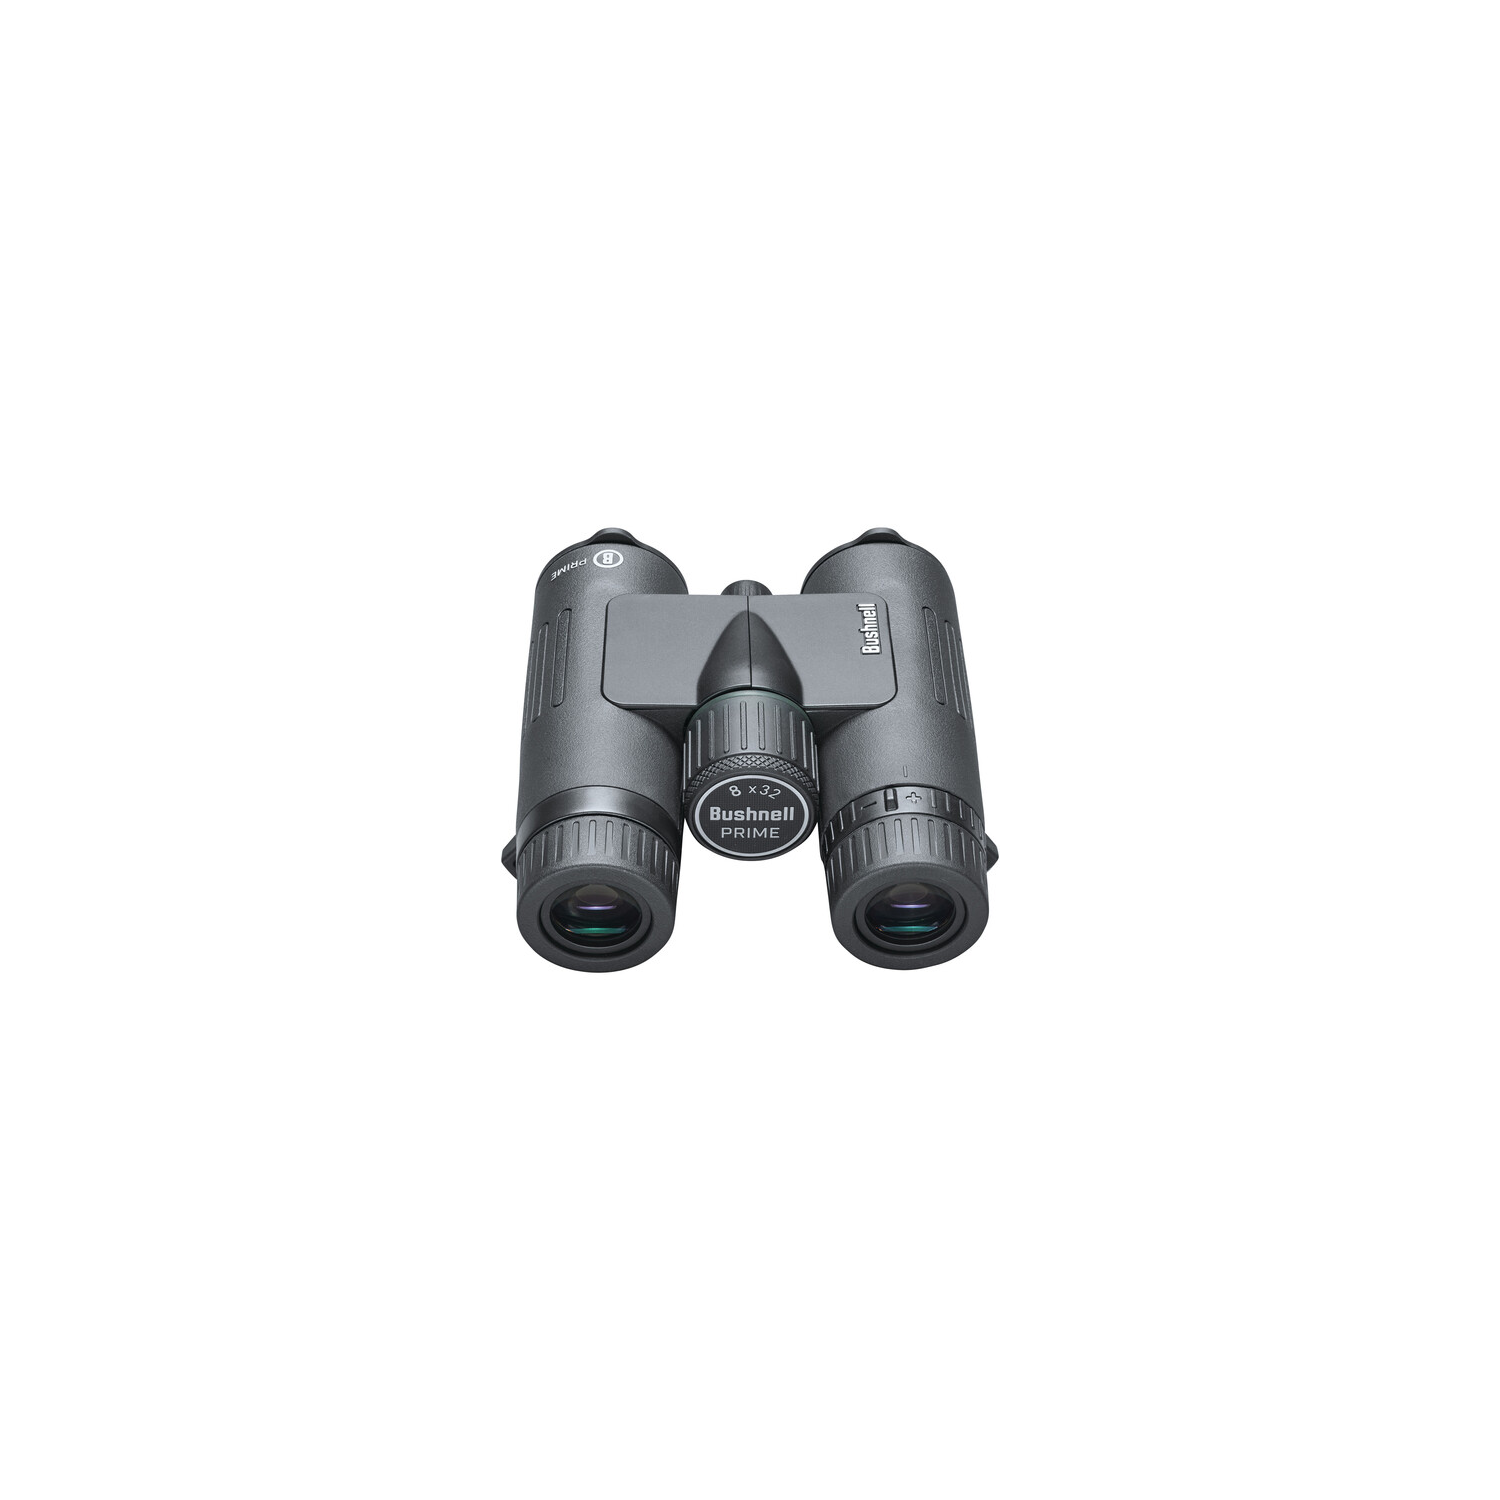 Bushnell BPR1028 10x28 Prime Binoculars étanche, prisme de toit, entièrement multicoé